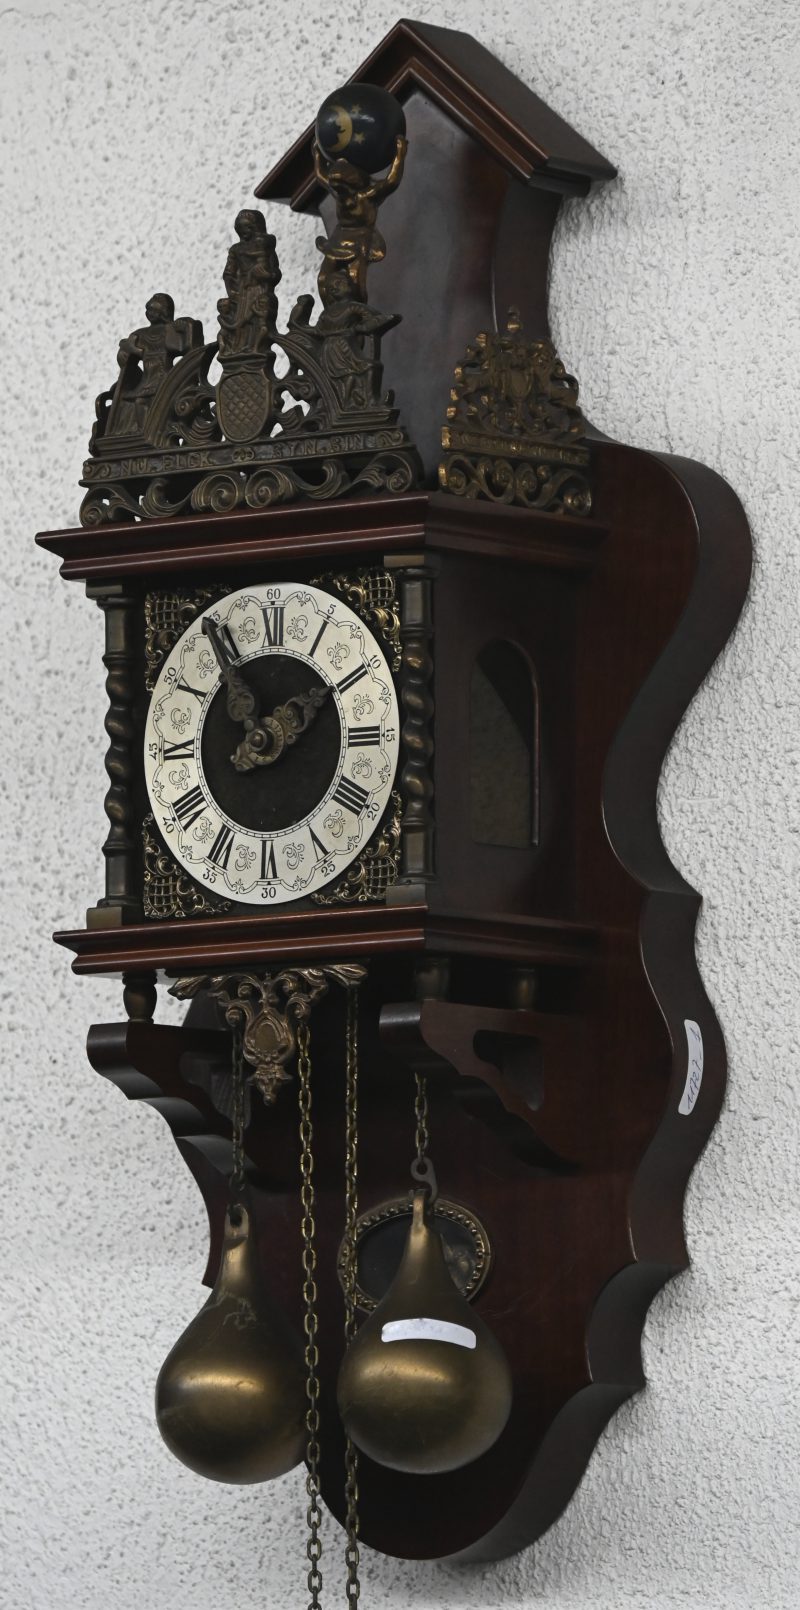 Een fraai versierde Zaanse klok. Compleet met gewichten.